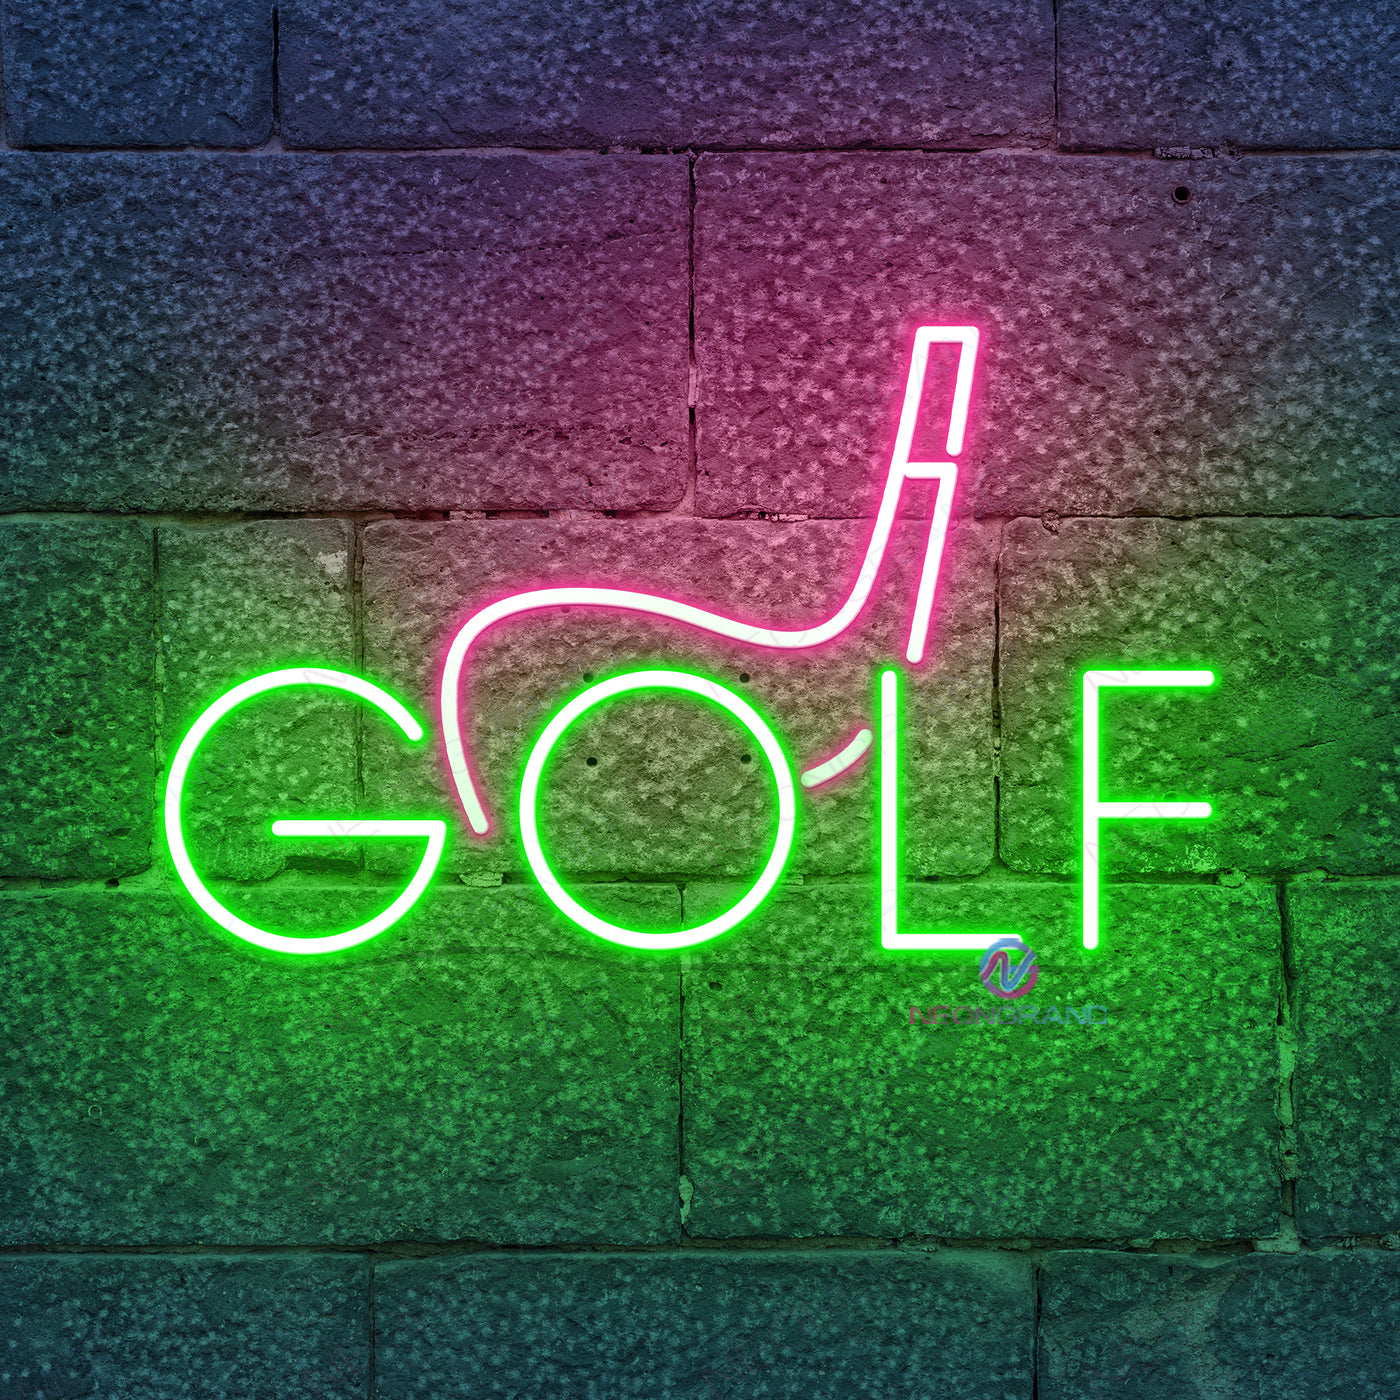 Neon Golf Sign Led Light